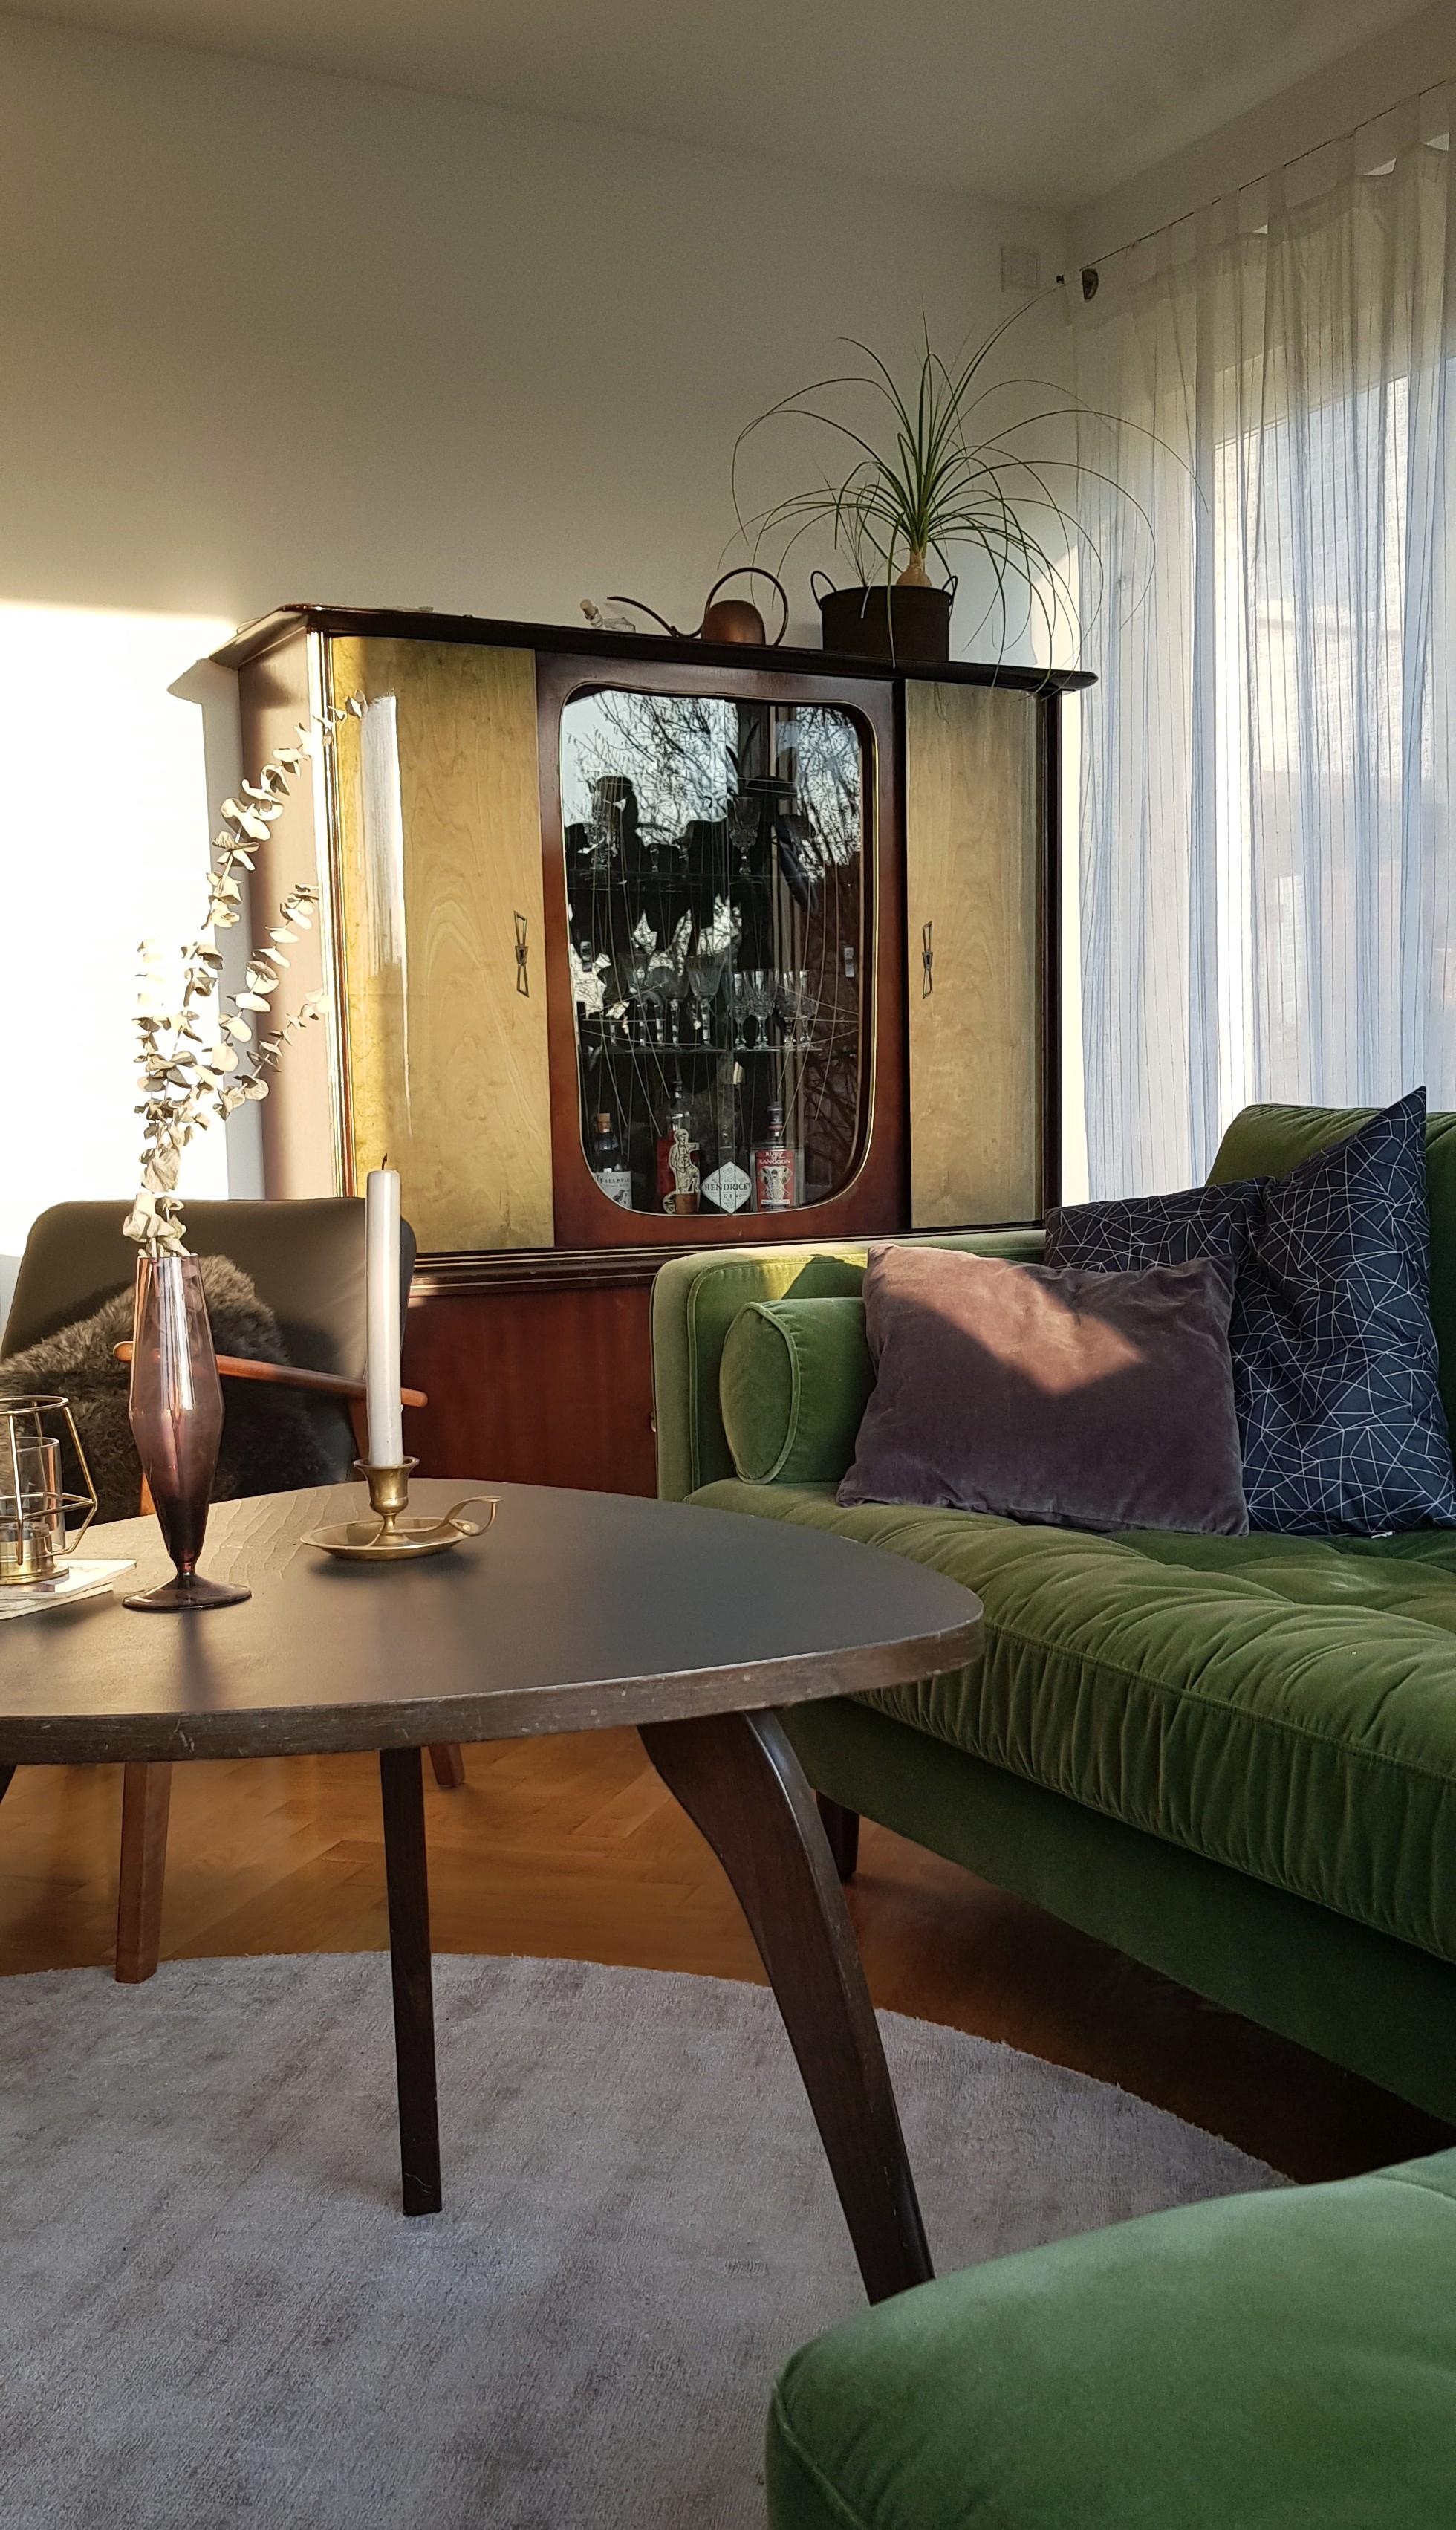 #livingchallenge #sofaecke
Das Sofa war Liebe auf den 1. Blick. Der Schrank von Oma weckt stets Kindheitserinnerungen 🖤